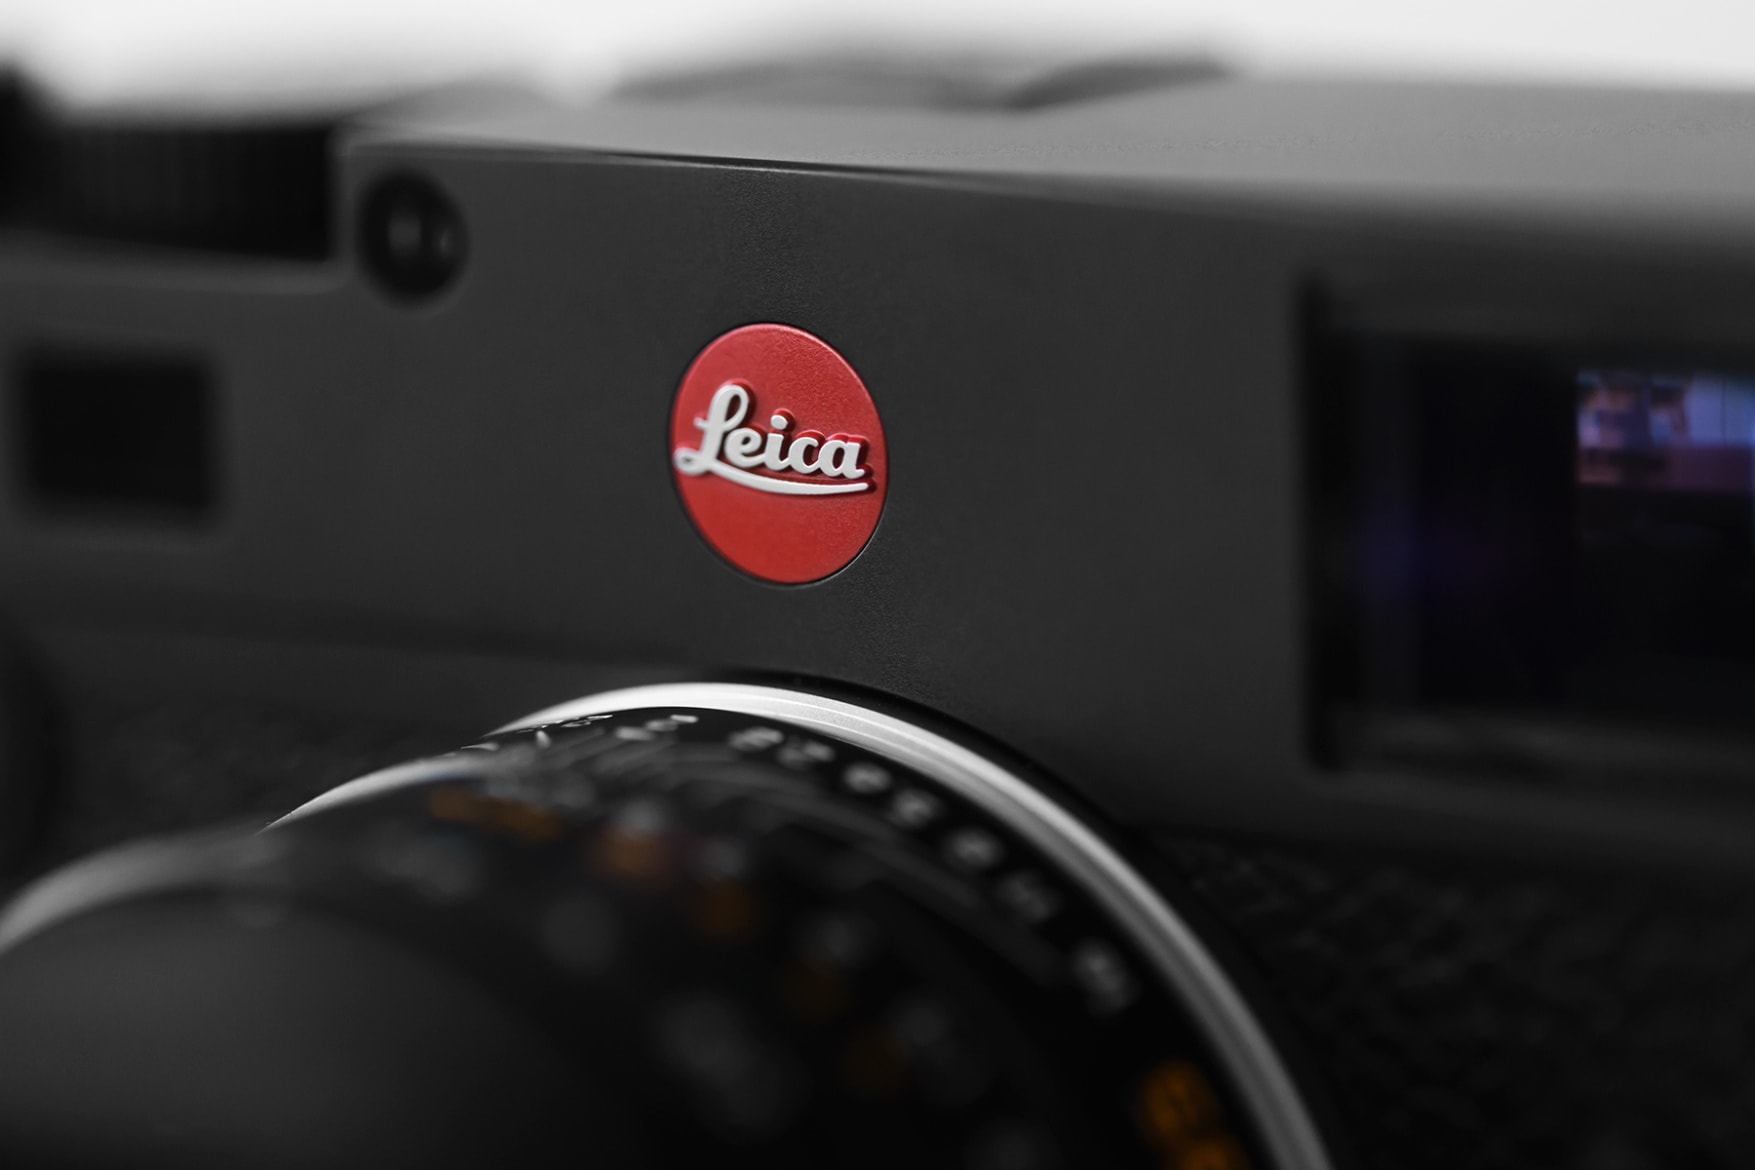 Leica M10 Closer Look